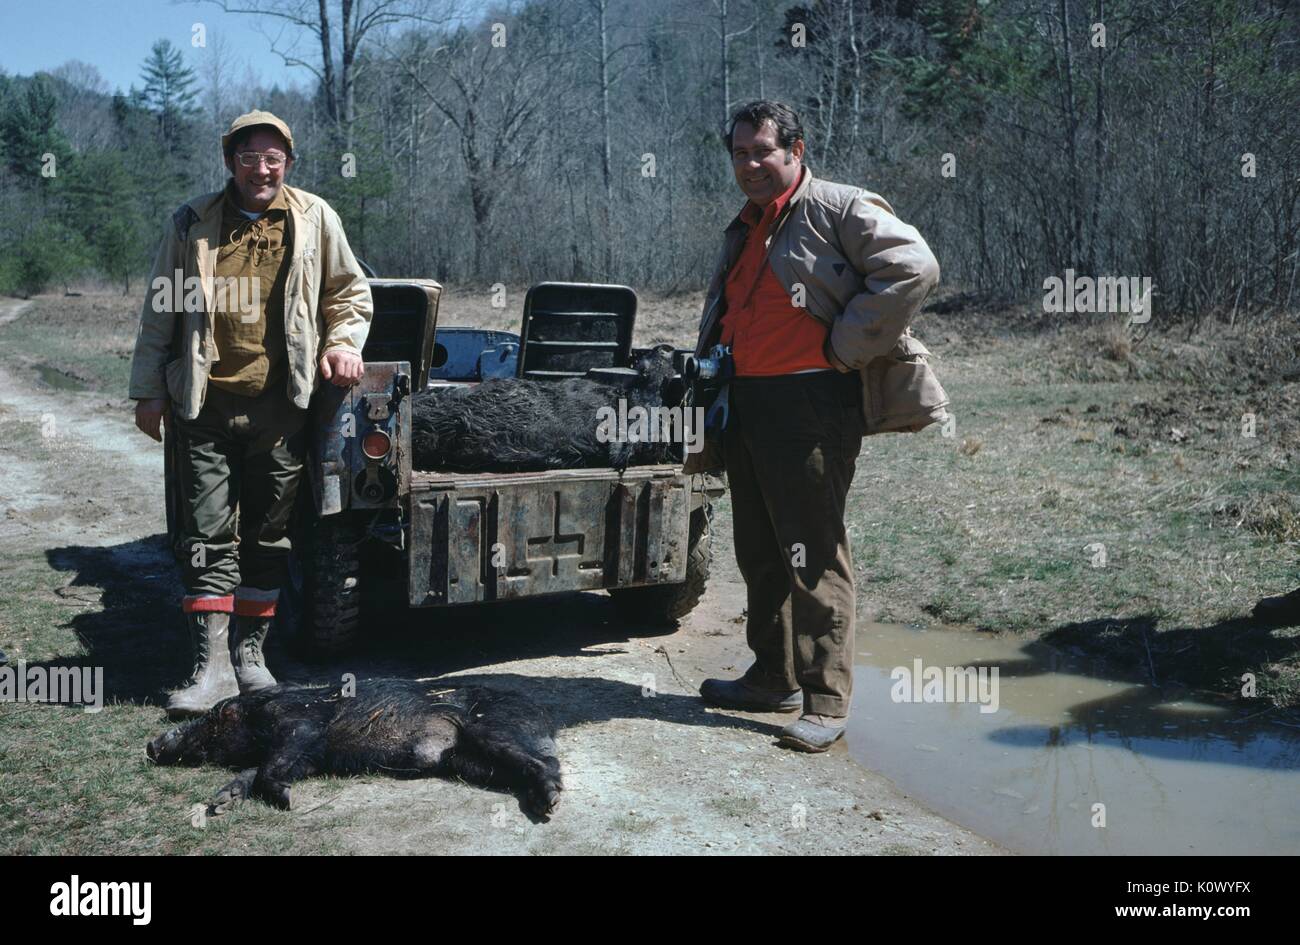 Deux chasseurs debout sur un chemin de terre dans les bois, à la fièrement la carcasse d'un sanglier abattu pendant leur voyage de chasse, du grain rôti Creek, Kentucky, 1975. Crédit photo Smith Collection/Gado/Getty Images. Banque D'Images